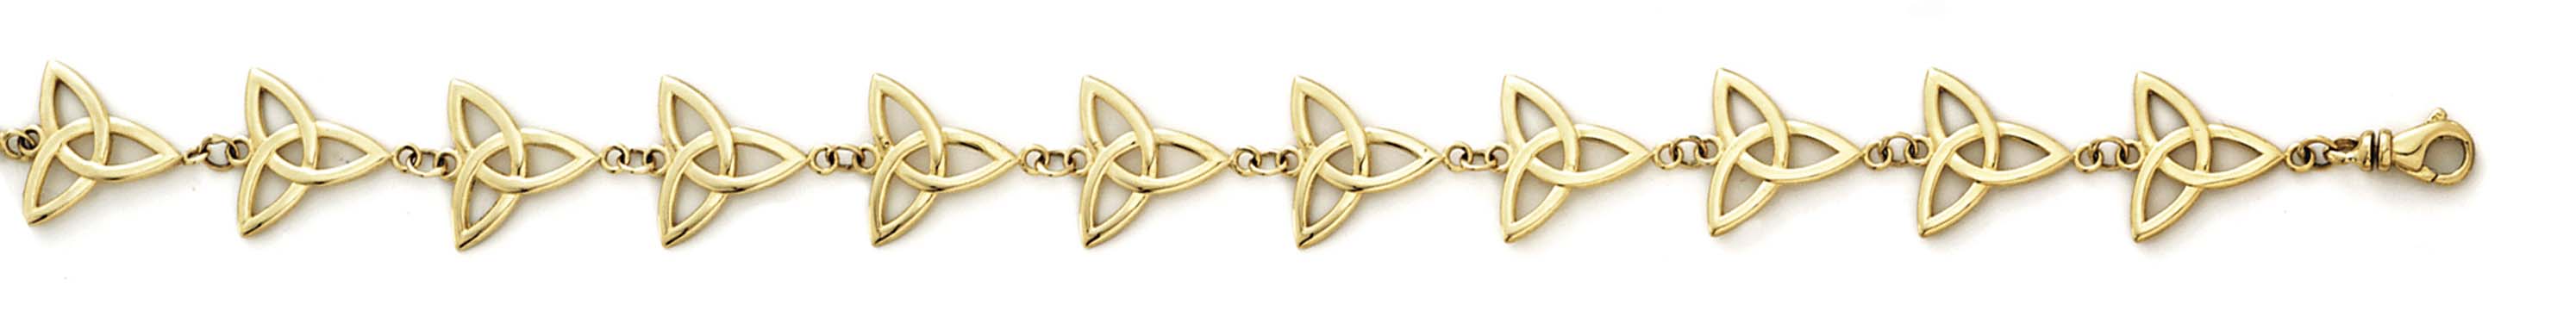 
14k Yellow Gold Celtic Knot Bracelet - 7.25 Inch
